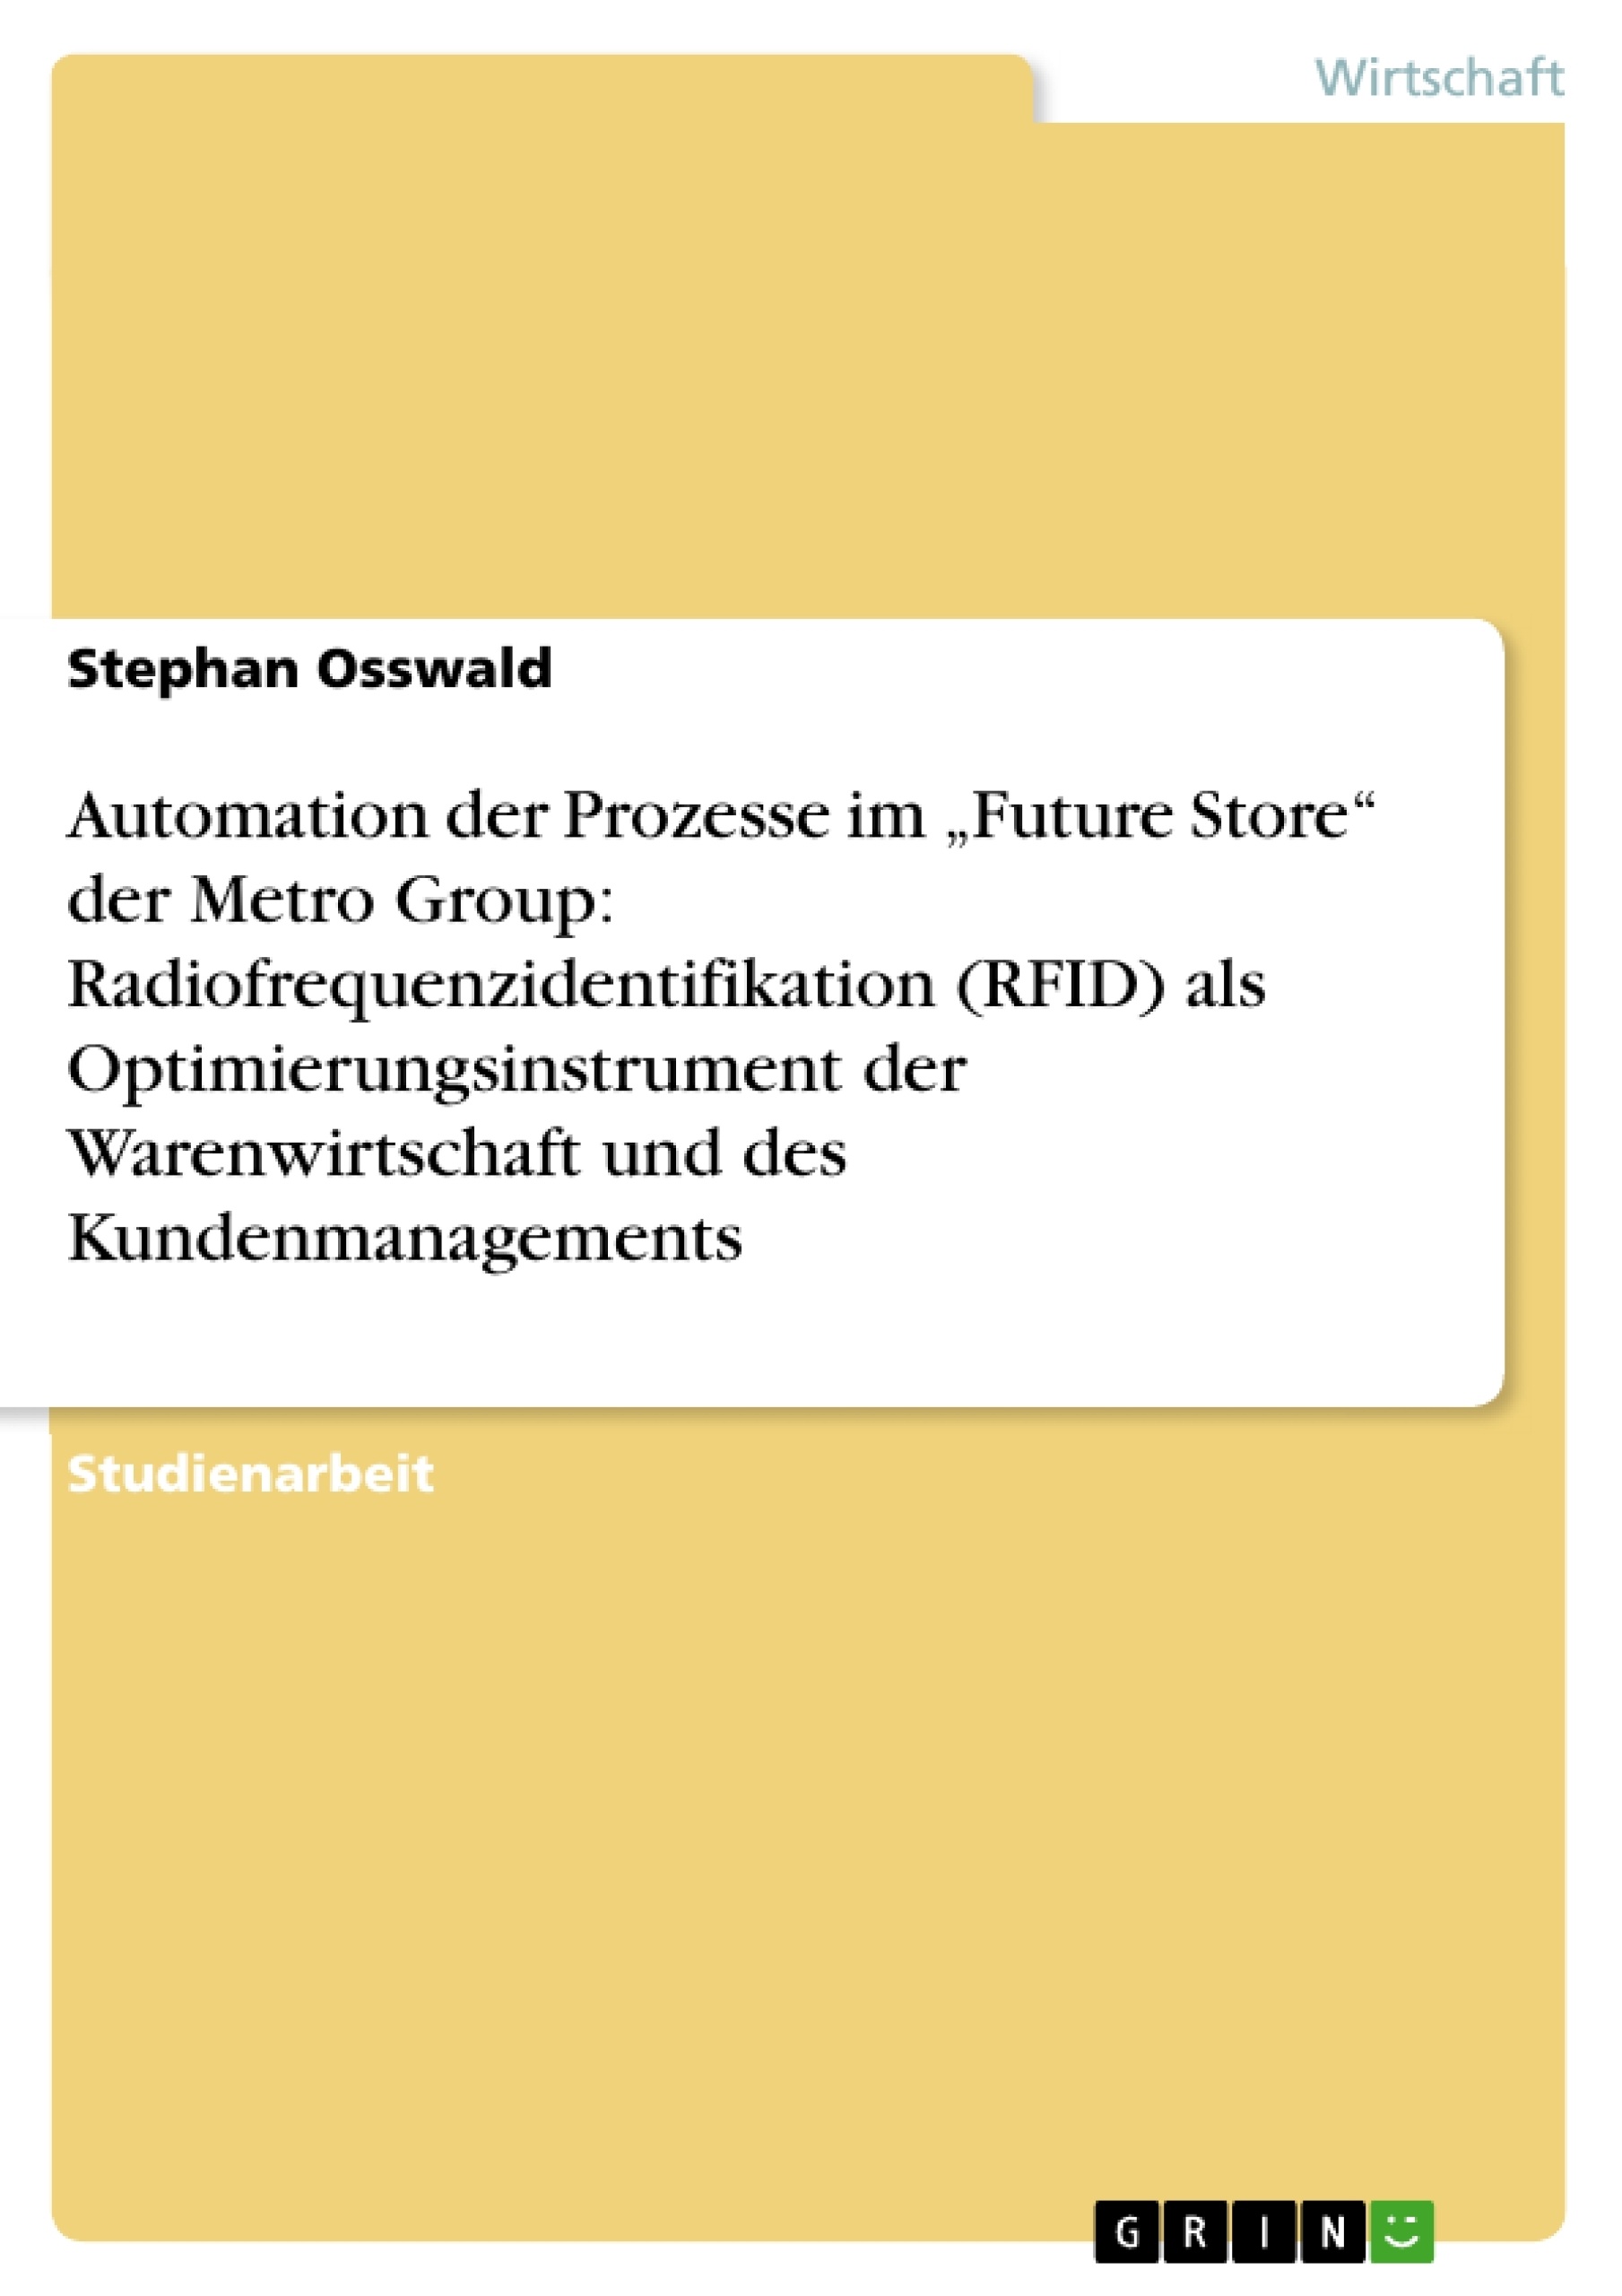 Título: Automation der Prozesse im „Future Store“ der Metro Group: Radiofrequenzidentifikation (RFID) als Optimierungsinstrument der Warenwirtschaft und des Kundenmanagements